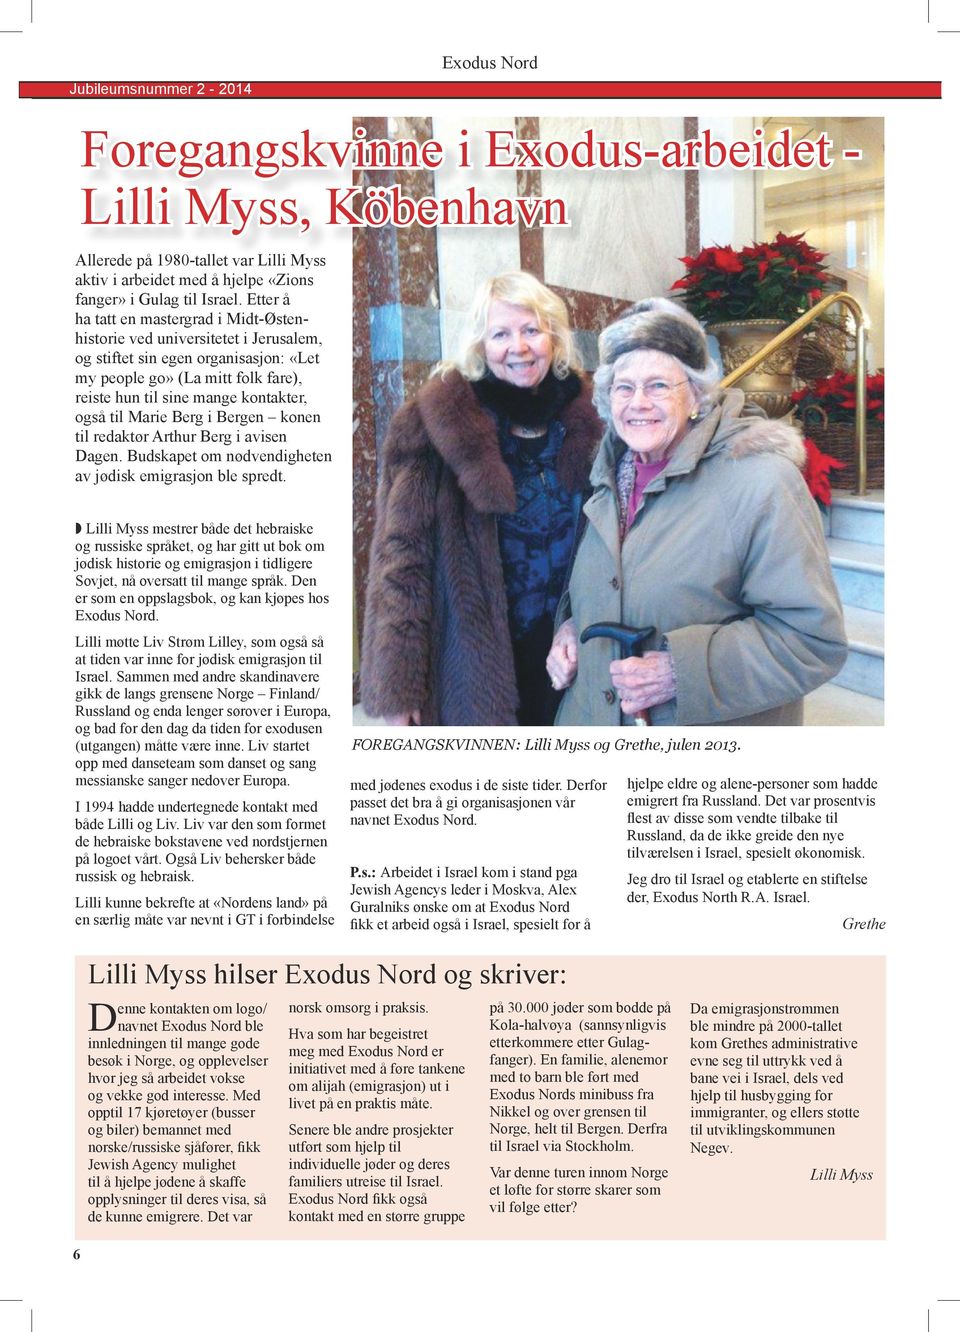 til Marie Berg i Bergen konen til redaktør Arthur Berg i avisen Dagen. Budskapet om nødvendigheten av jødisk emigrasjon ble spredt.